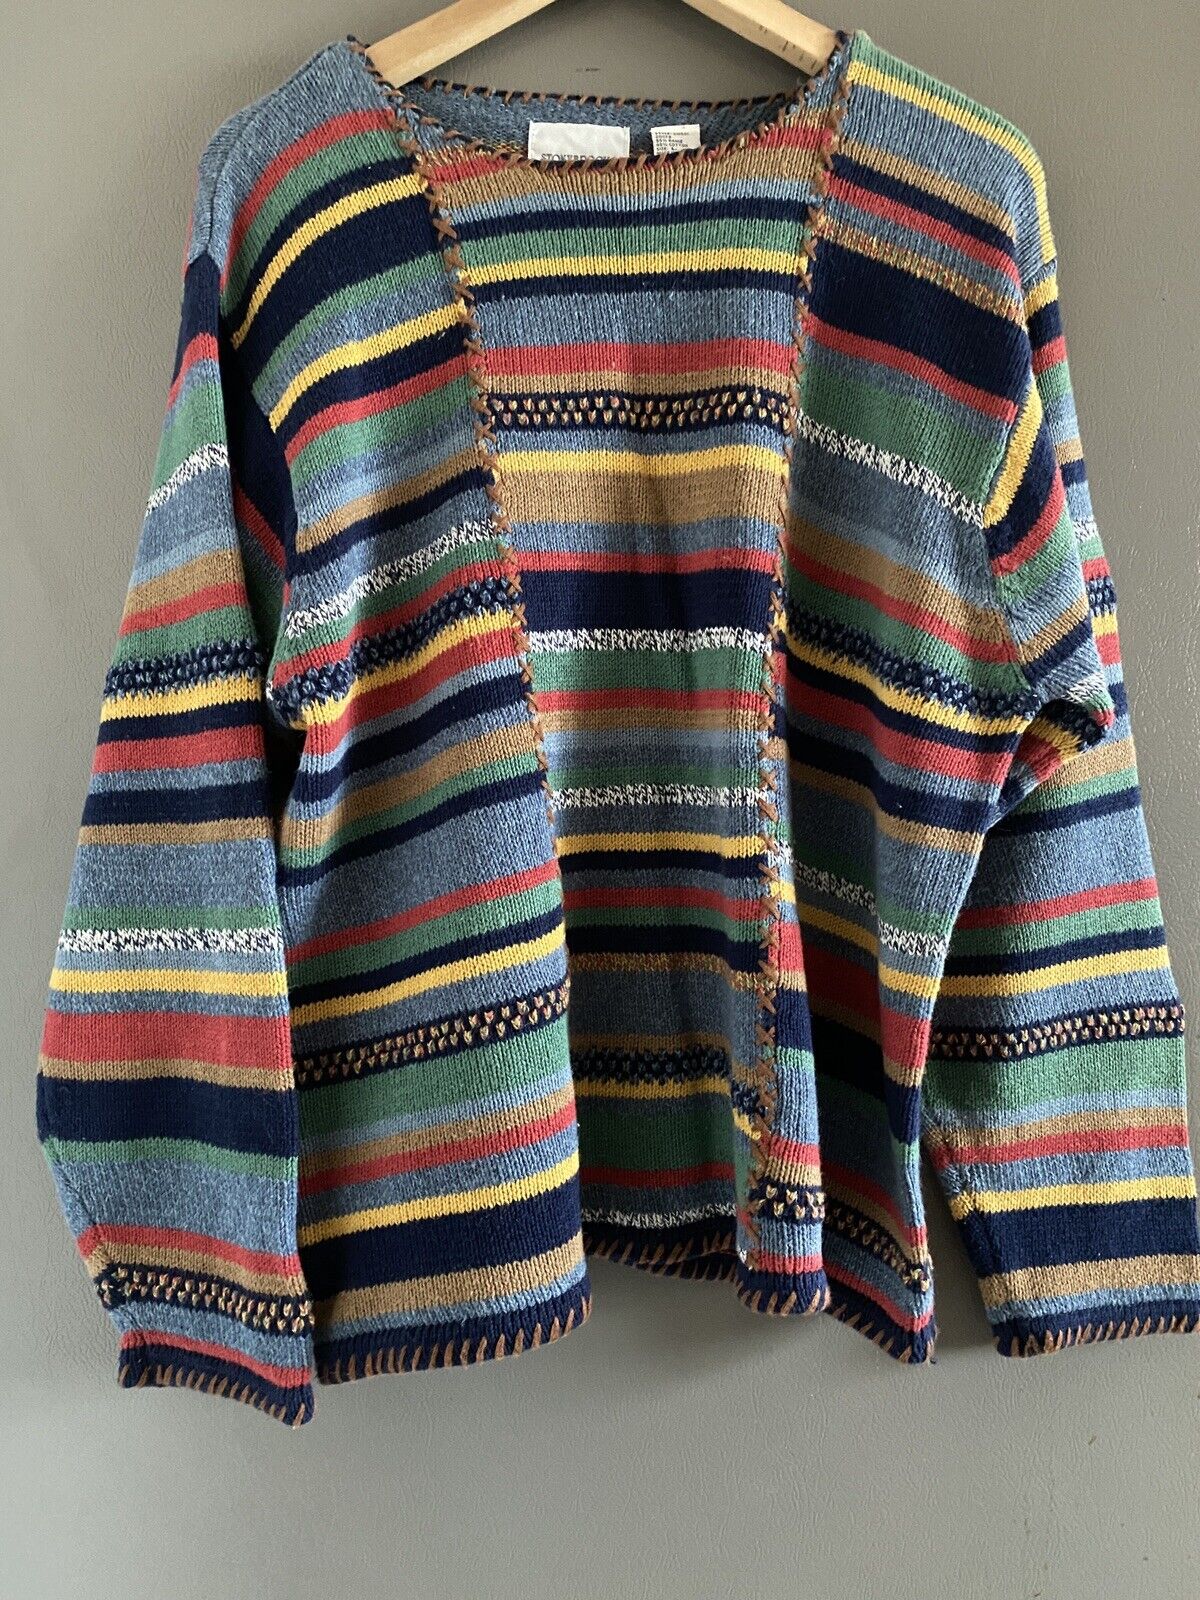 Stonybrook Vintage multi-color boho knit sweater … - image 1